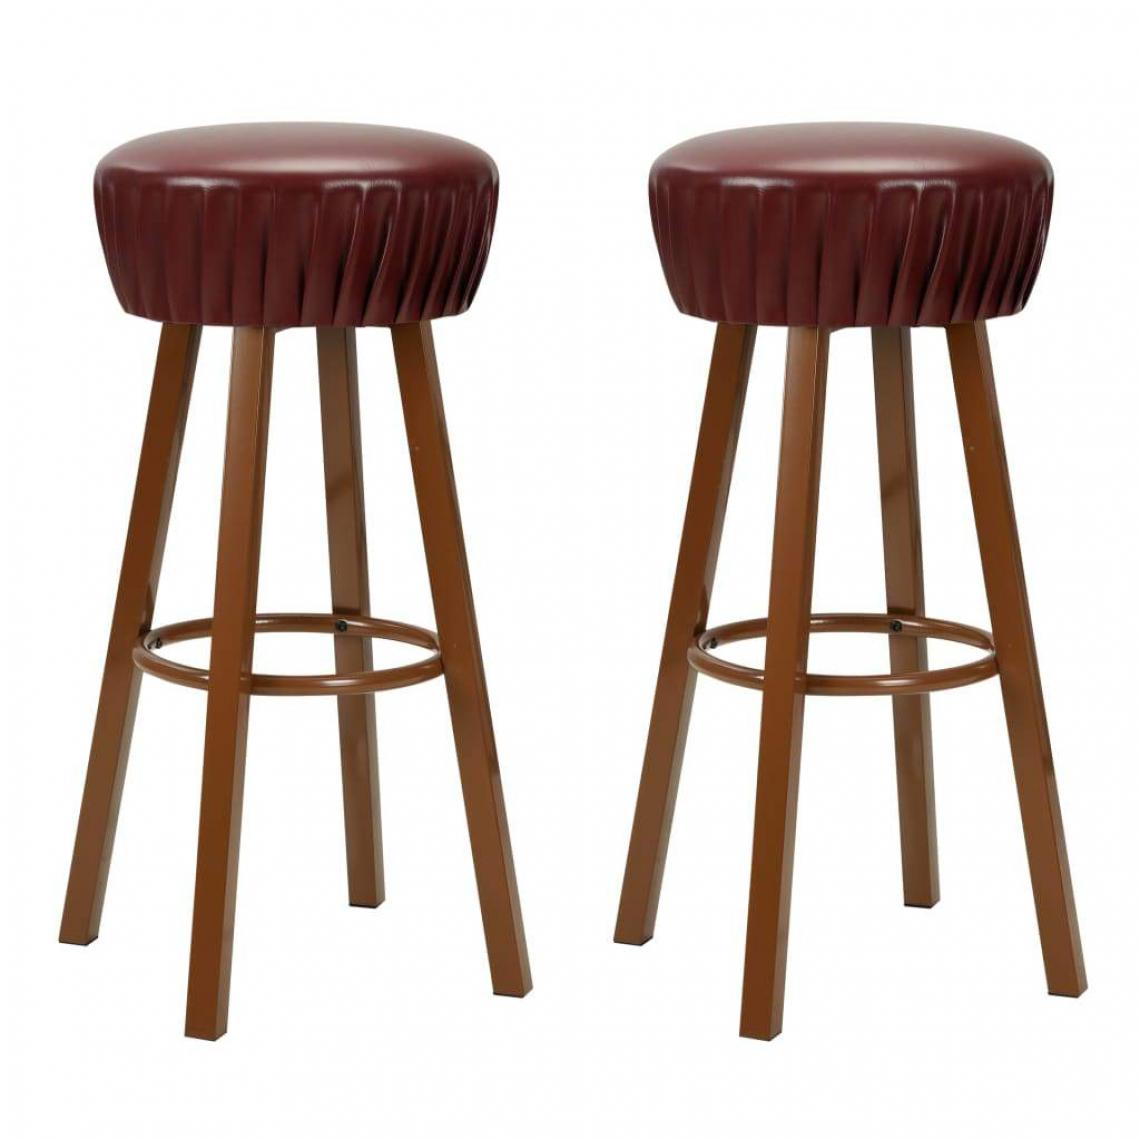 Helloshop26 - Lot de deux tabourets de bar design chaise siège similicuir marron 1202068 - Tabourets